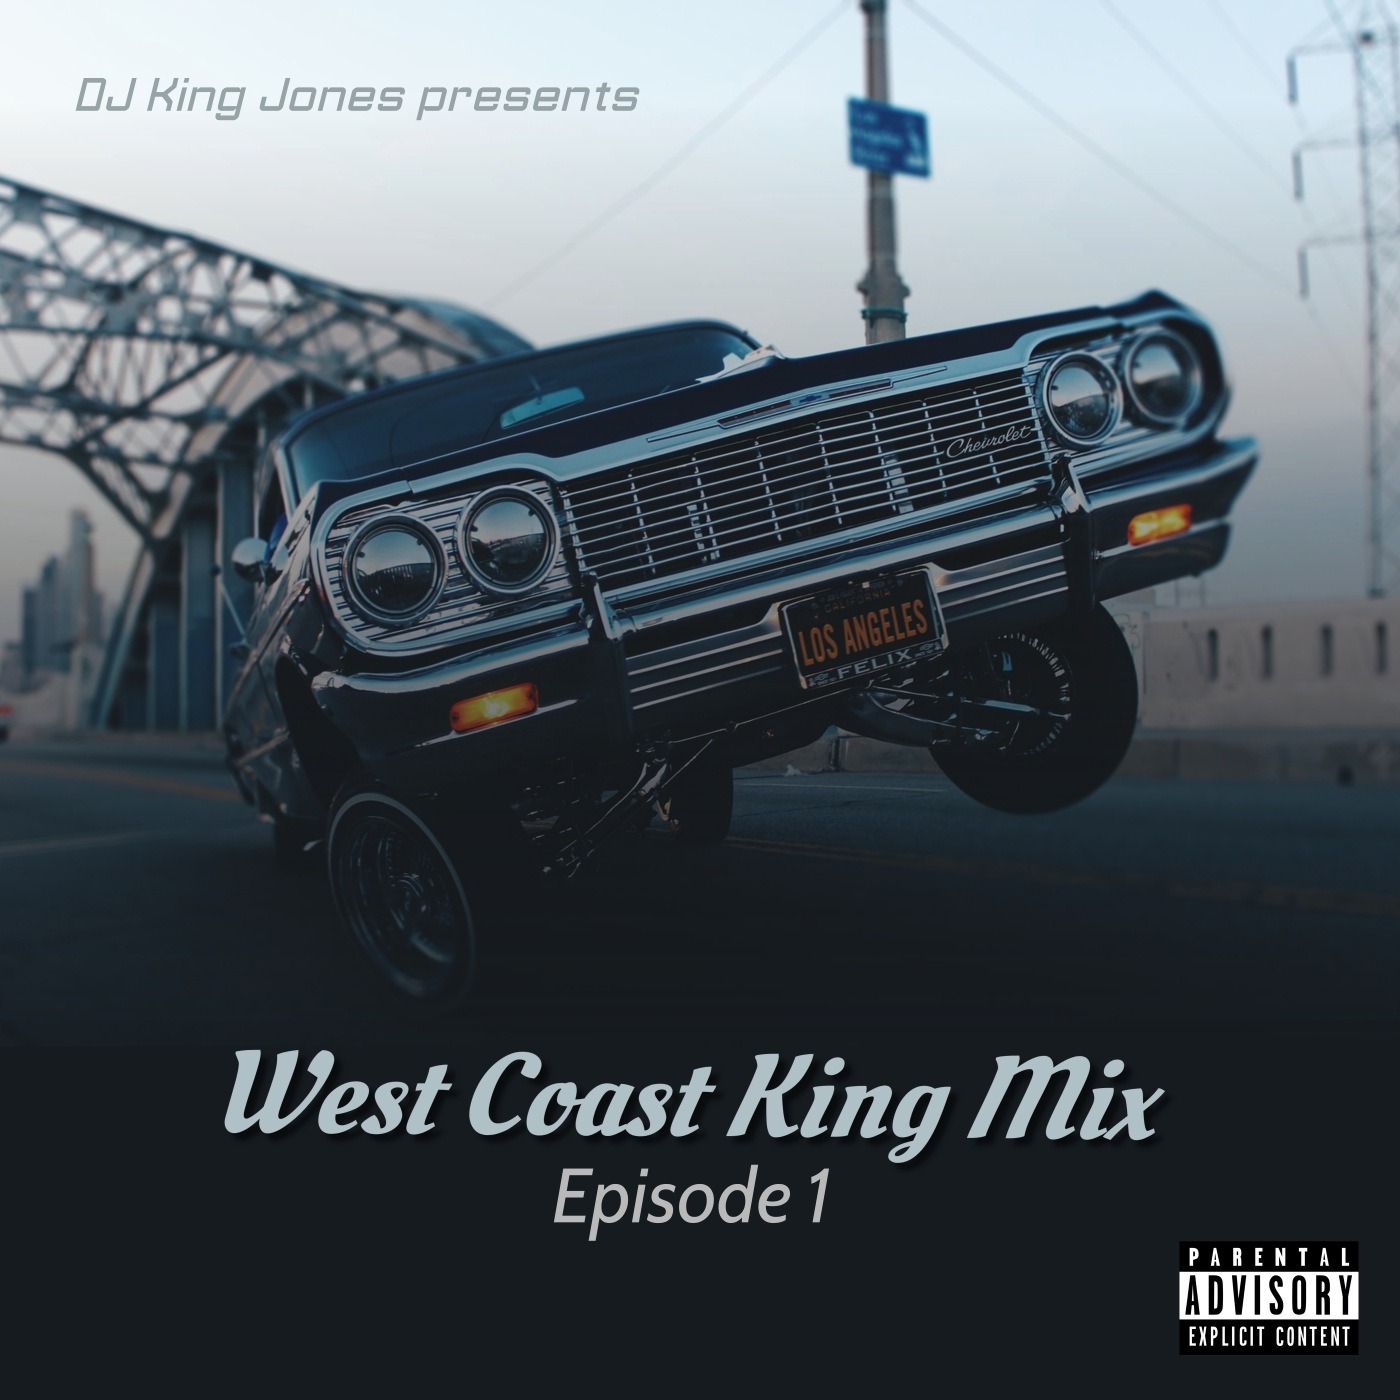 West Coast King Mix (Episode 1) Image